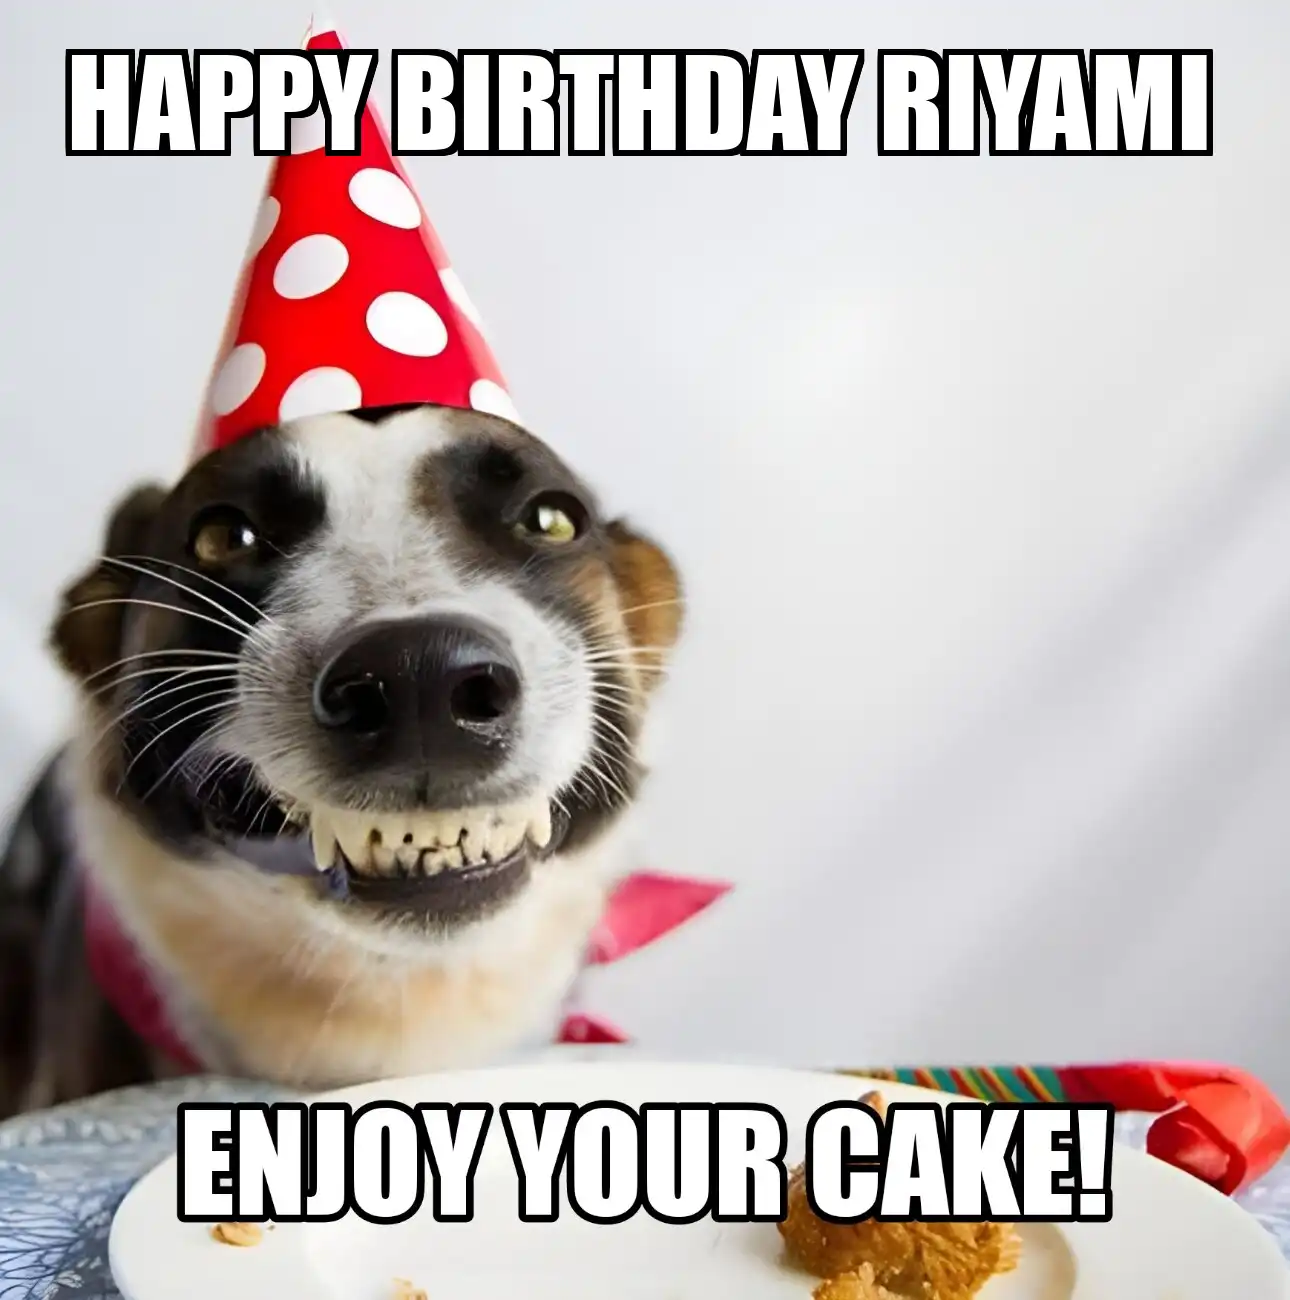 Happy Birthday Riyami Enjoy Your Cake Dog Meme